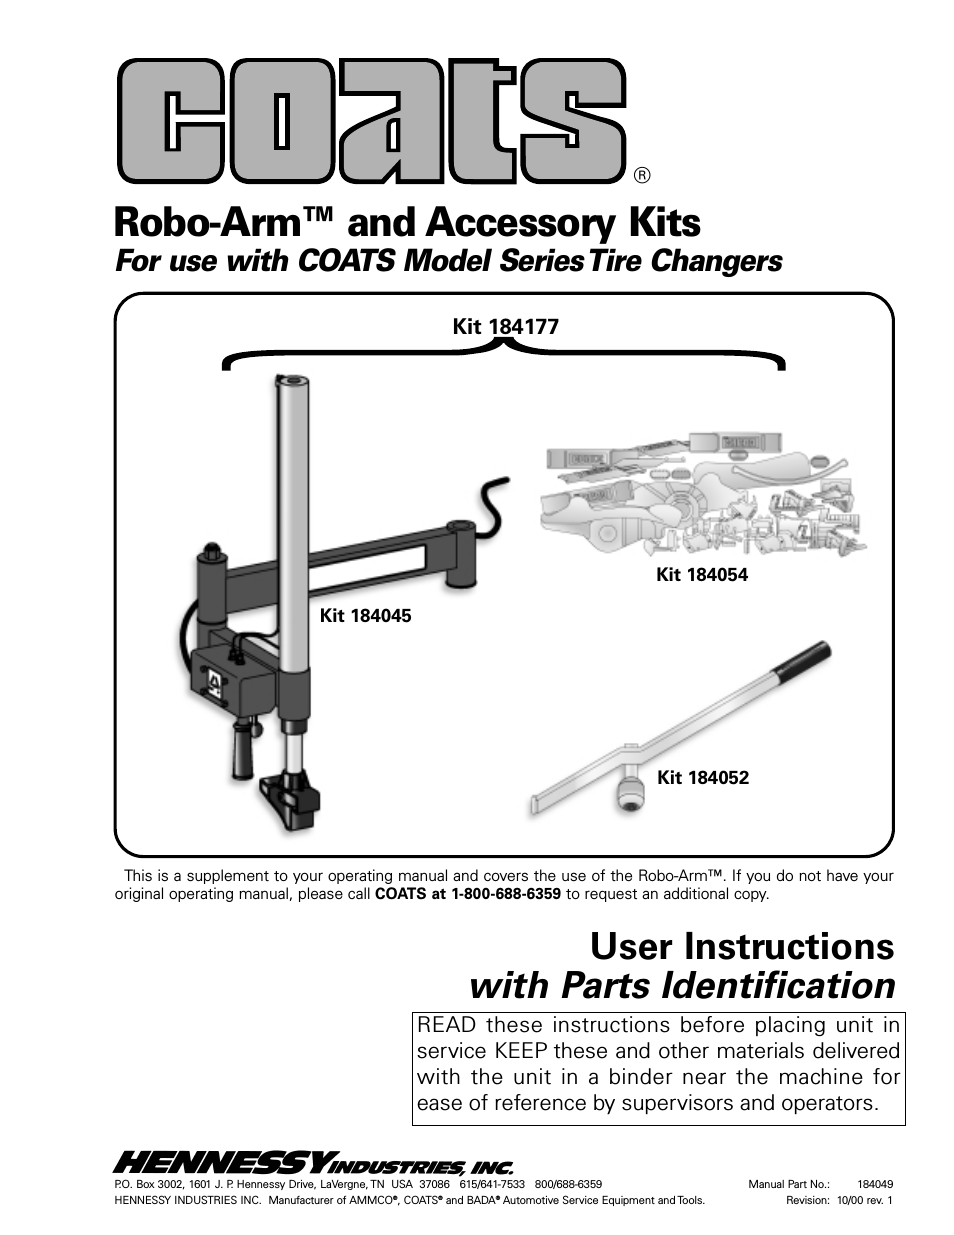 Kit 8184177 Robo-Arm and Accessory Kits